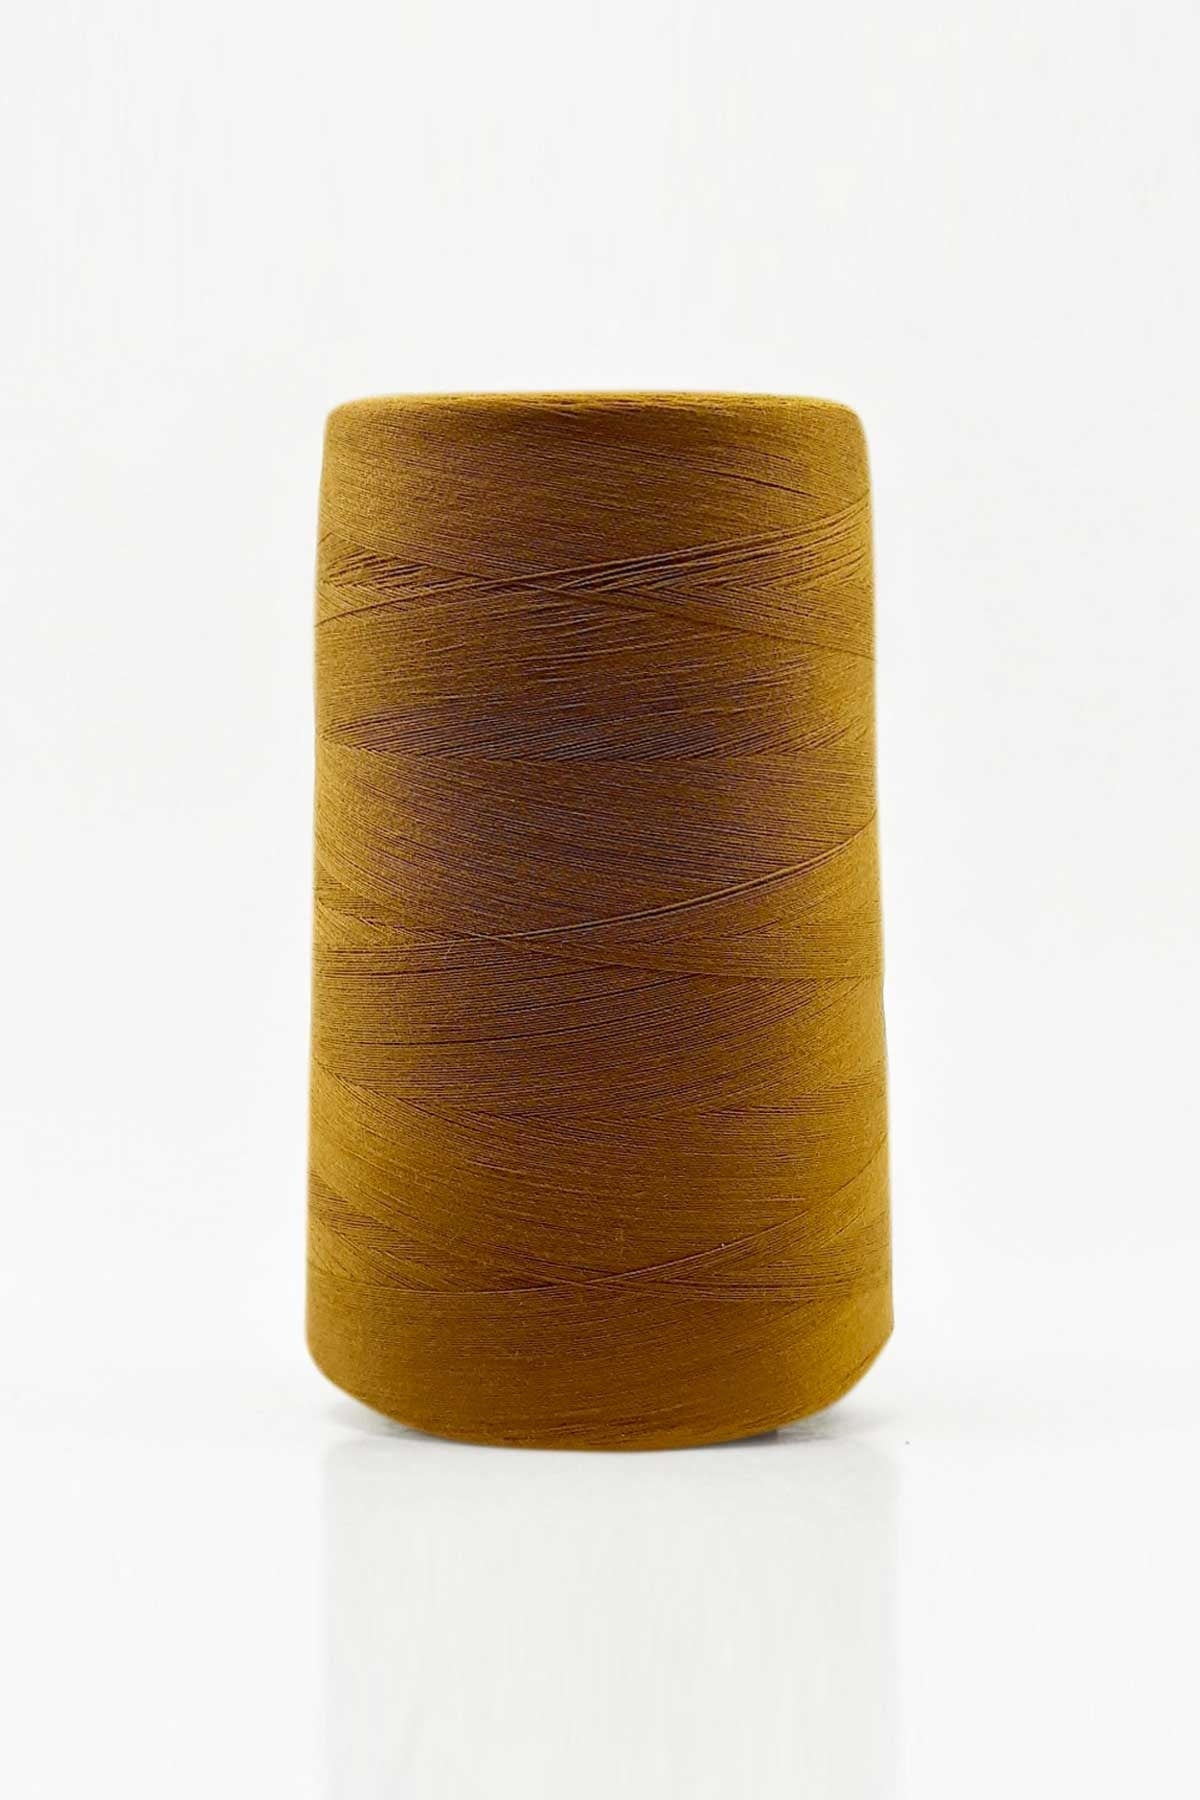 Madame Tricote Paris Cotton Cordonnet Thread Size: 26/6